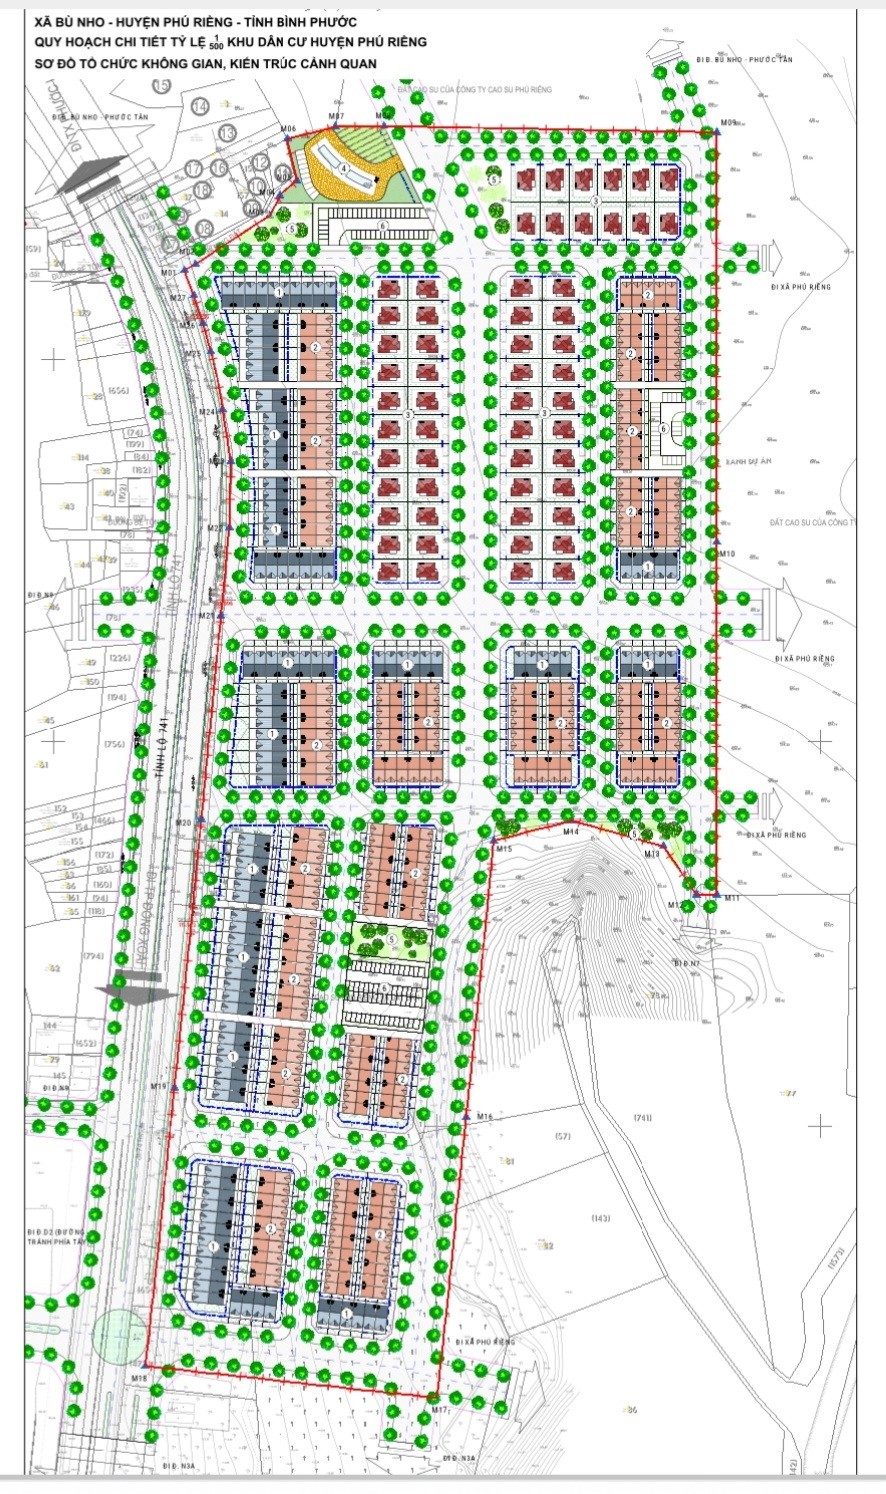 Bình Phước: Triển khai xây dựng khu dân cư Phú Riềng gần 14 ha